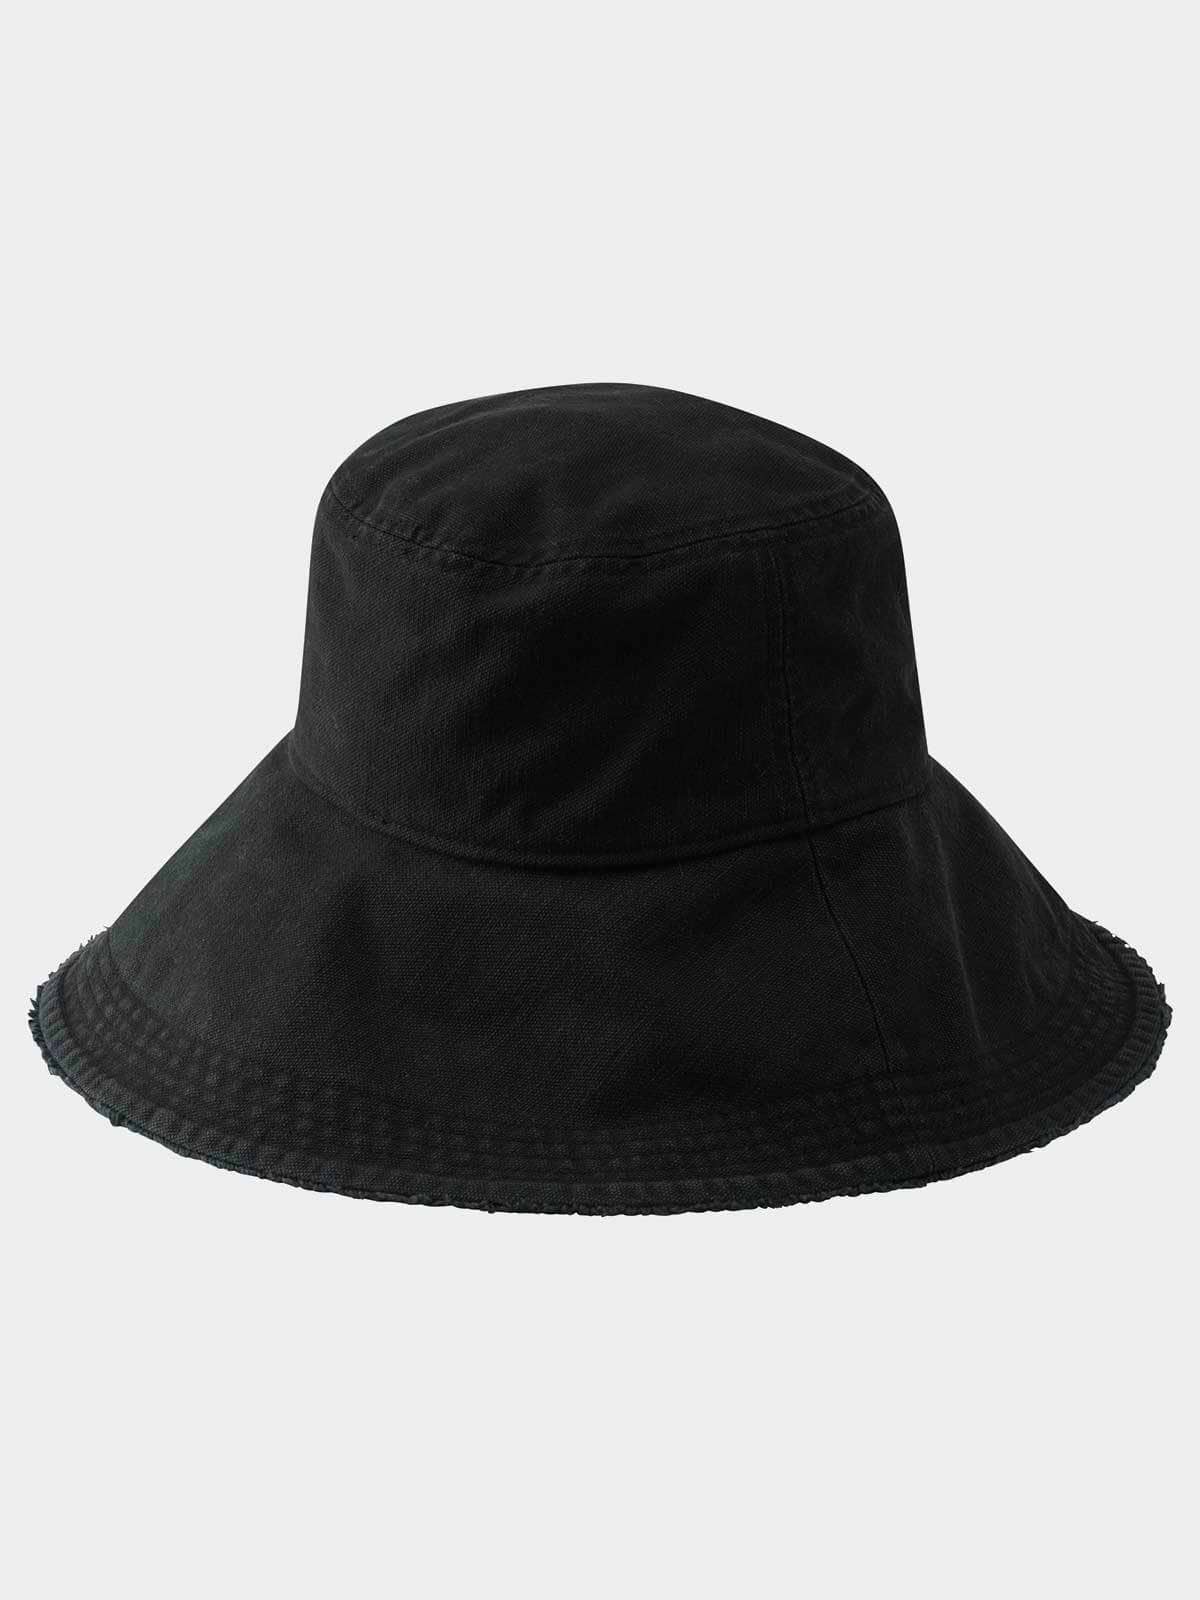 כובע באקט רחב שוליים עם פאץ' לוגו  / יוניסקס- Reebok|ריבוק